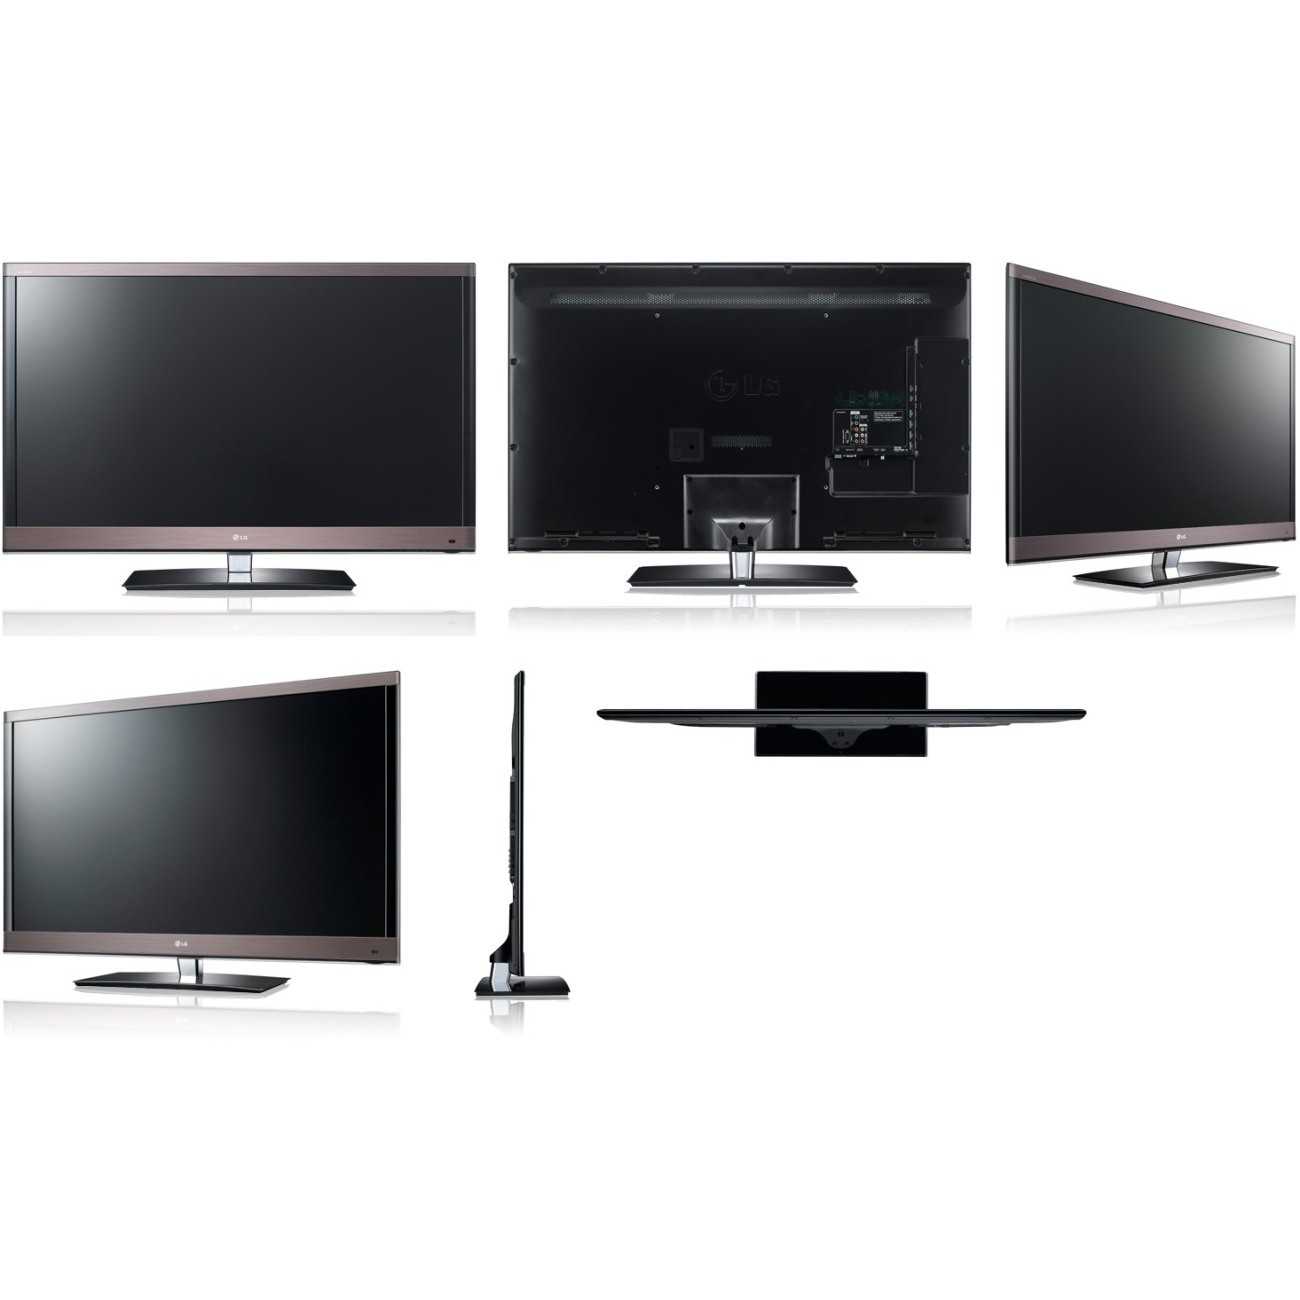 Thomson l32d3200 - купить , скидки, цена, отзывы, обзор, характеристики - телевизоры